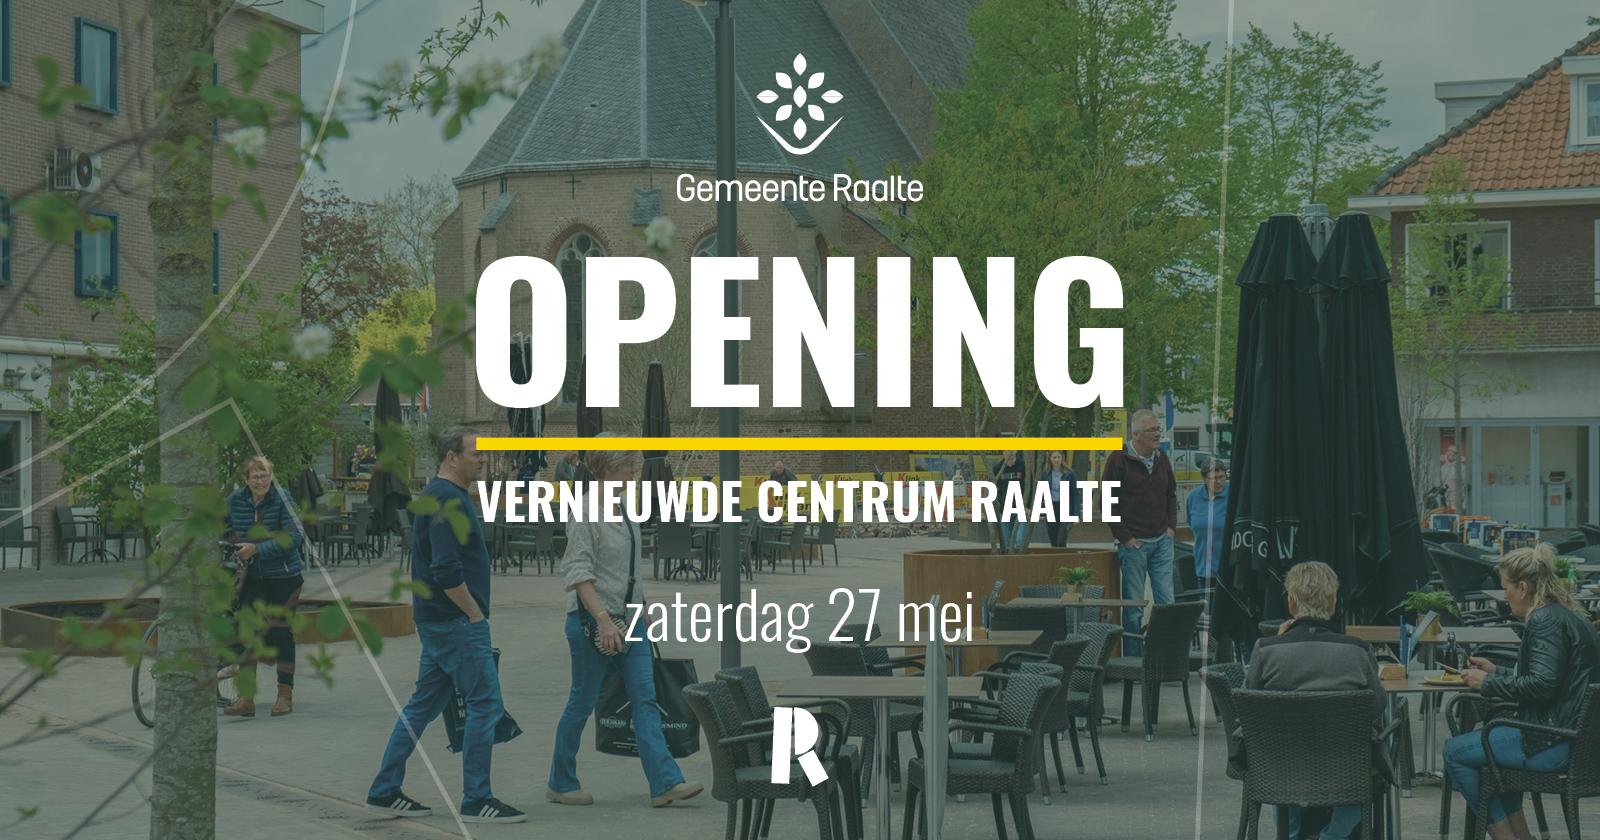 Opening vernieuwde centrum Raalte 2